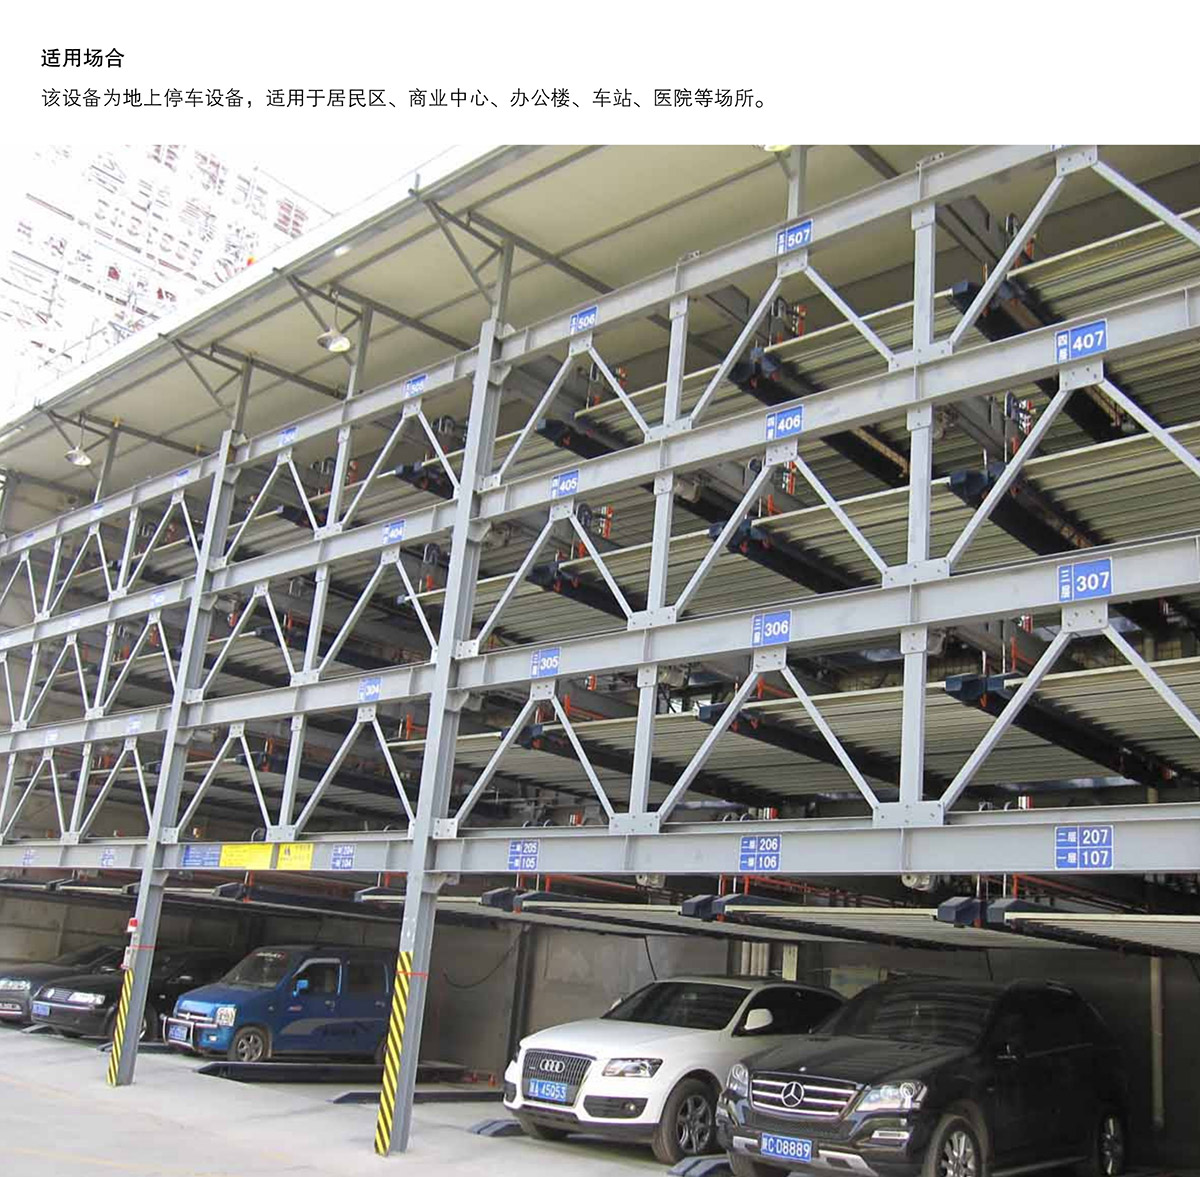 四至六层PSH4-6升降横移机械停车设备适用场合.jpg